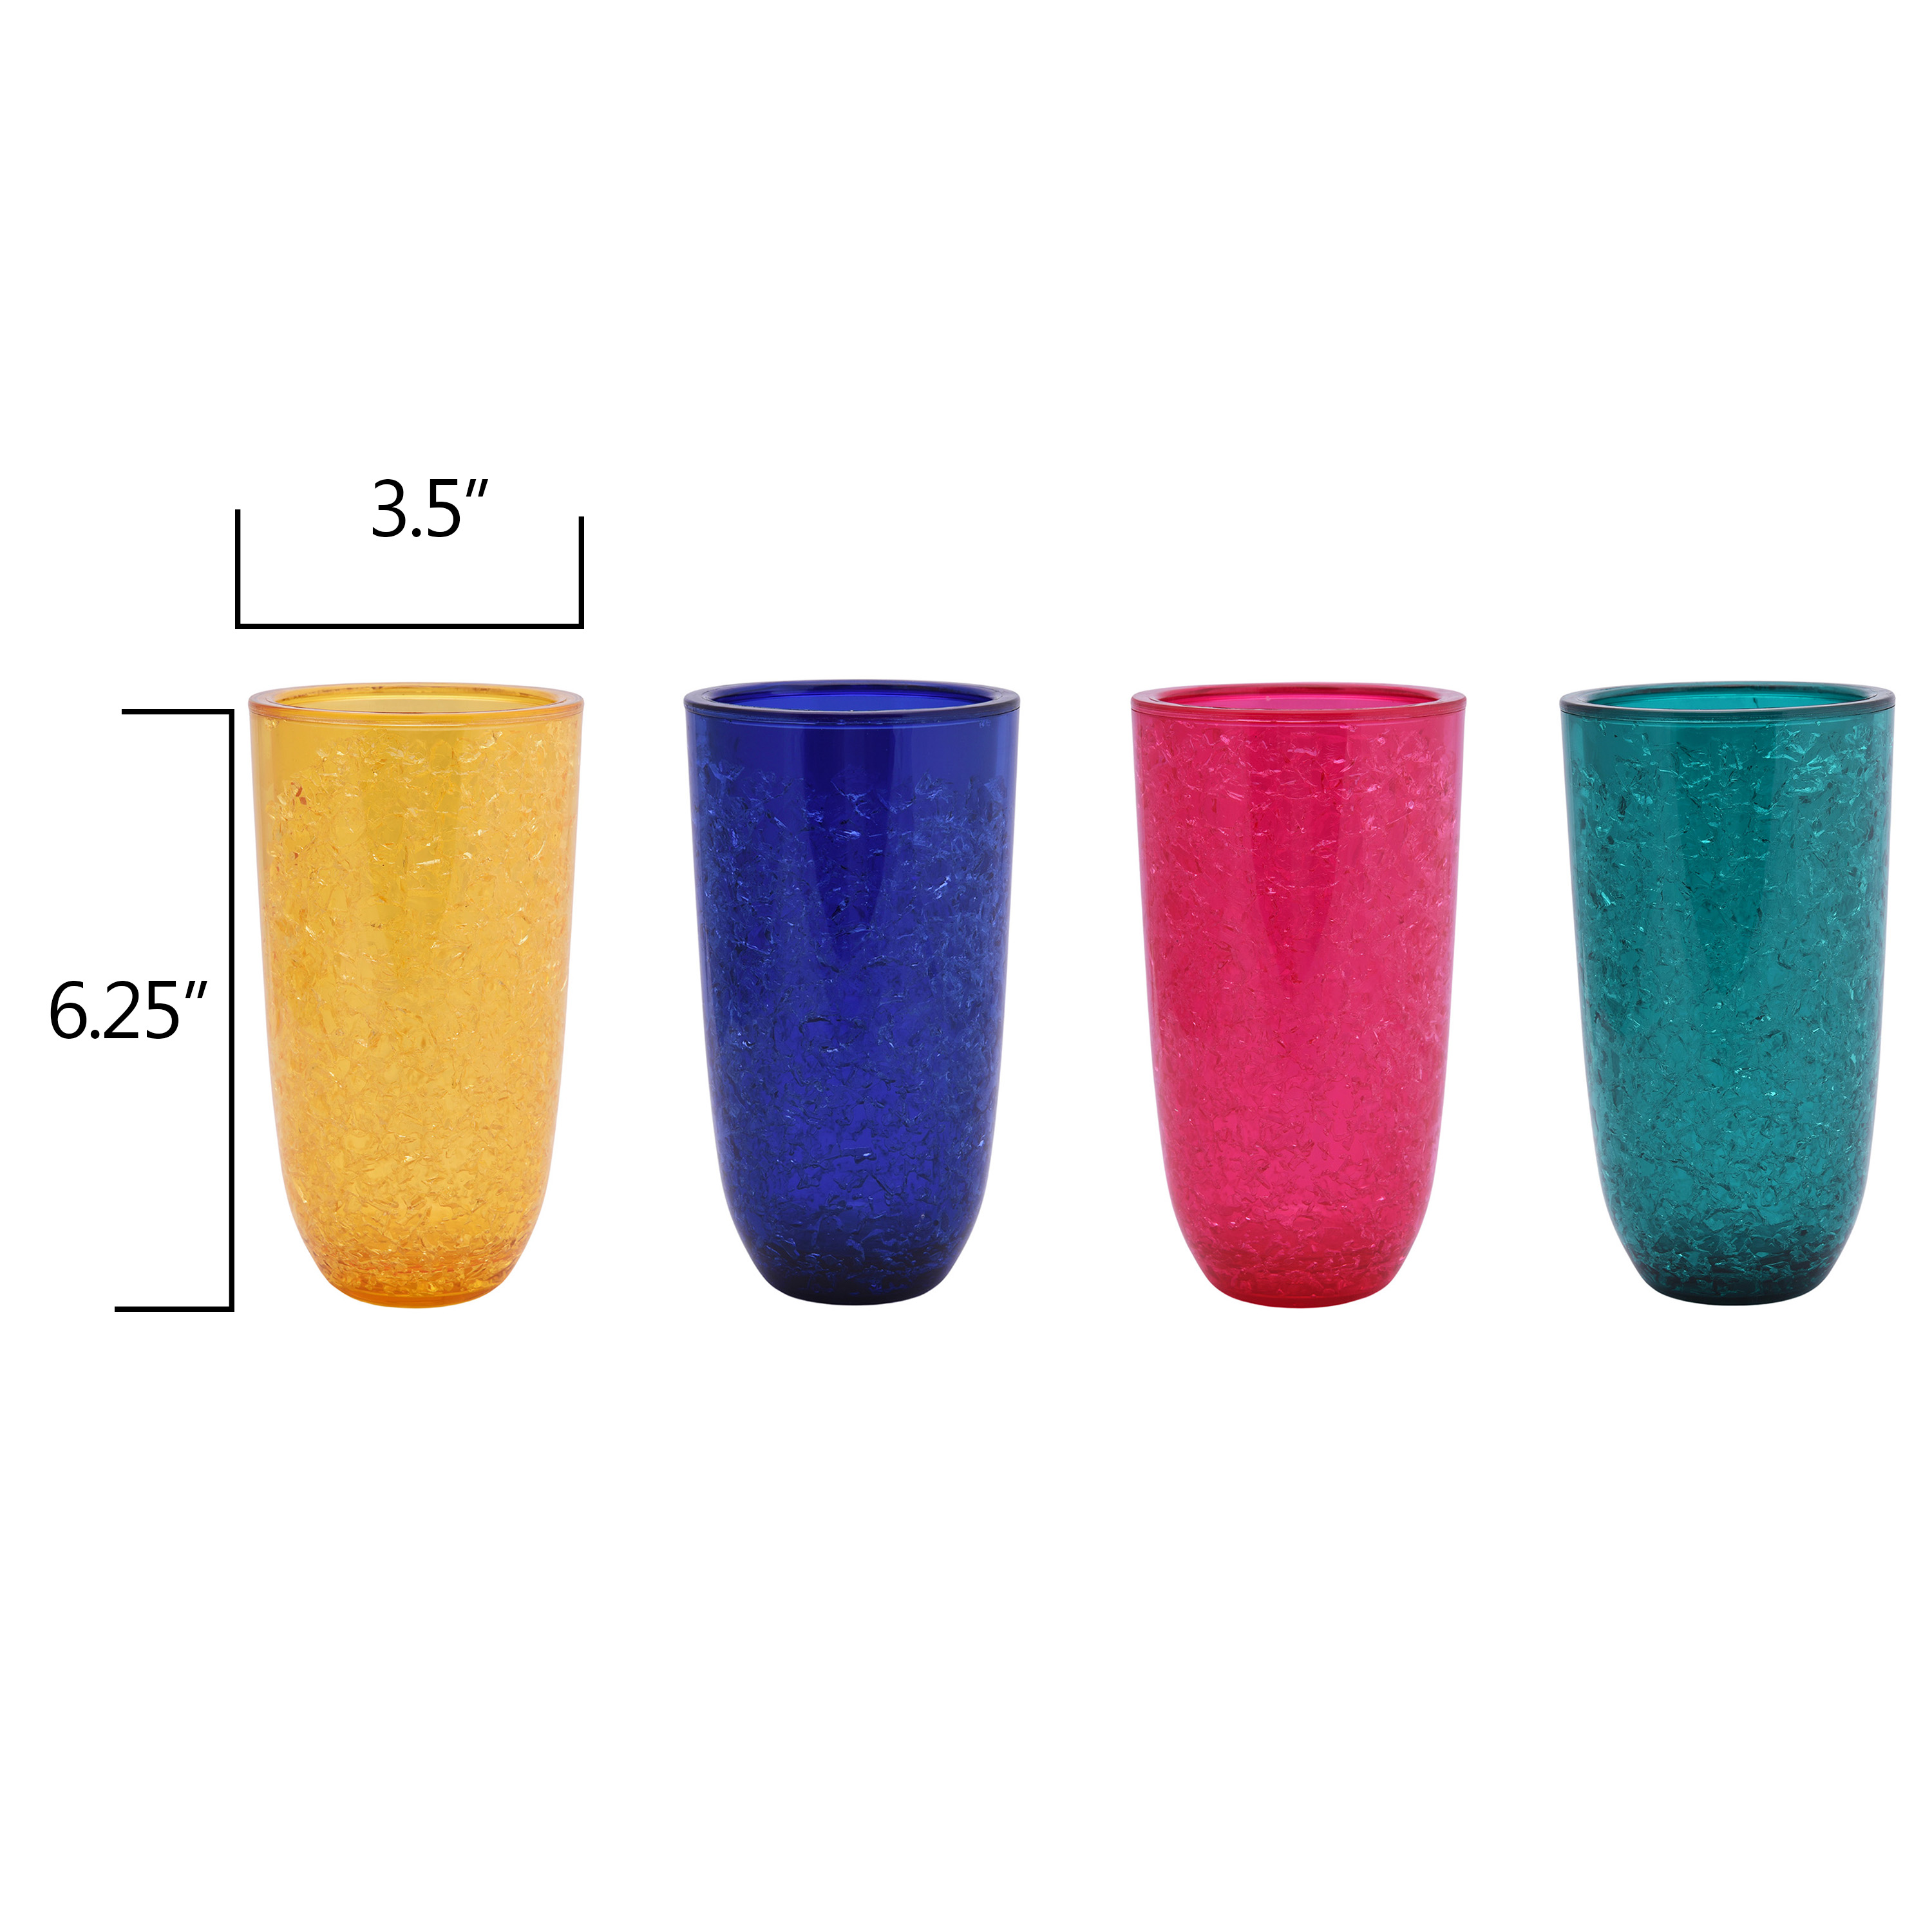 Mainstays 16-Ounce Acrylic Freezer Ice Gel Tumbler Set, Multicolored - image 2 of 7